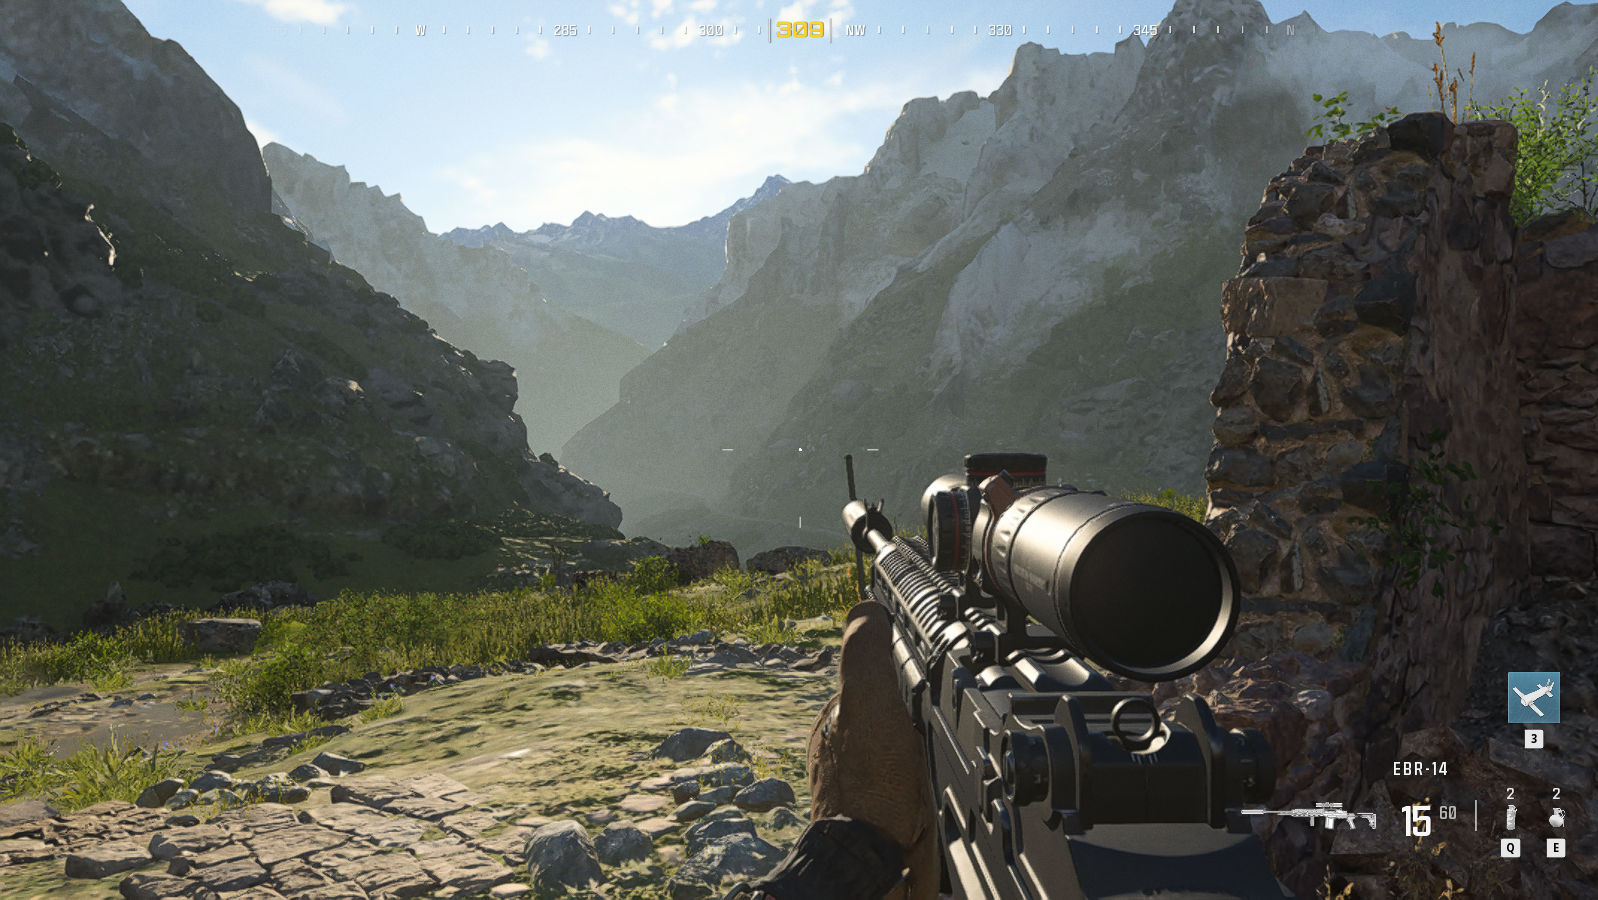 En la misión Carga Explosiva las visuales se lucen con sencillez. Vía Modern Warfare III